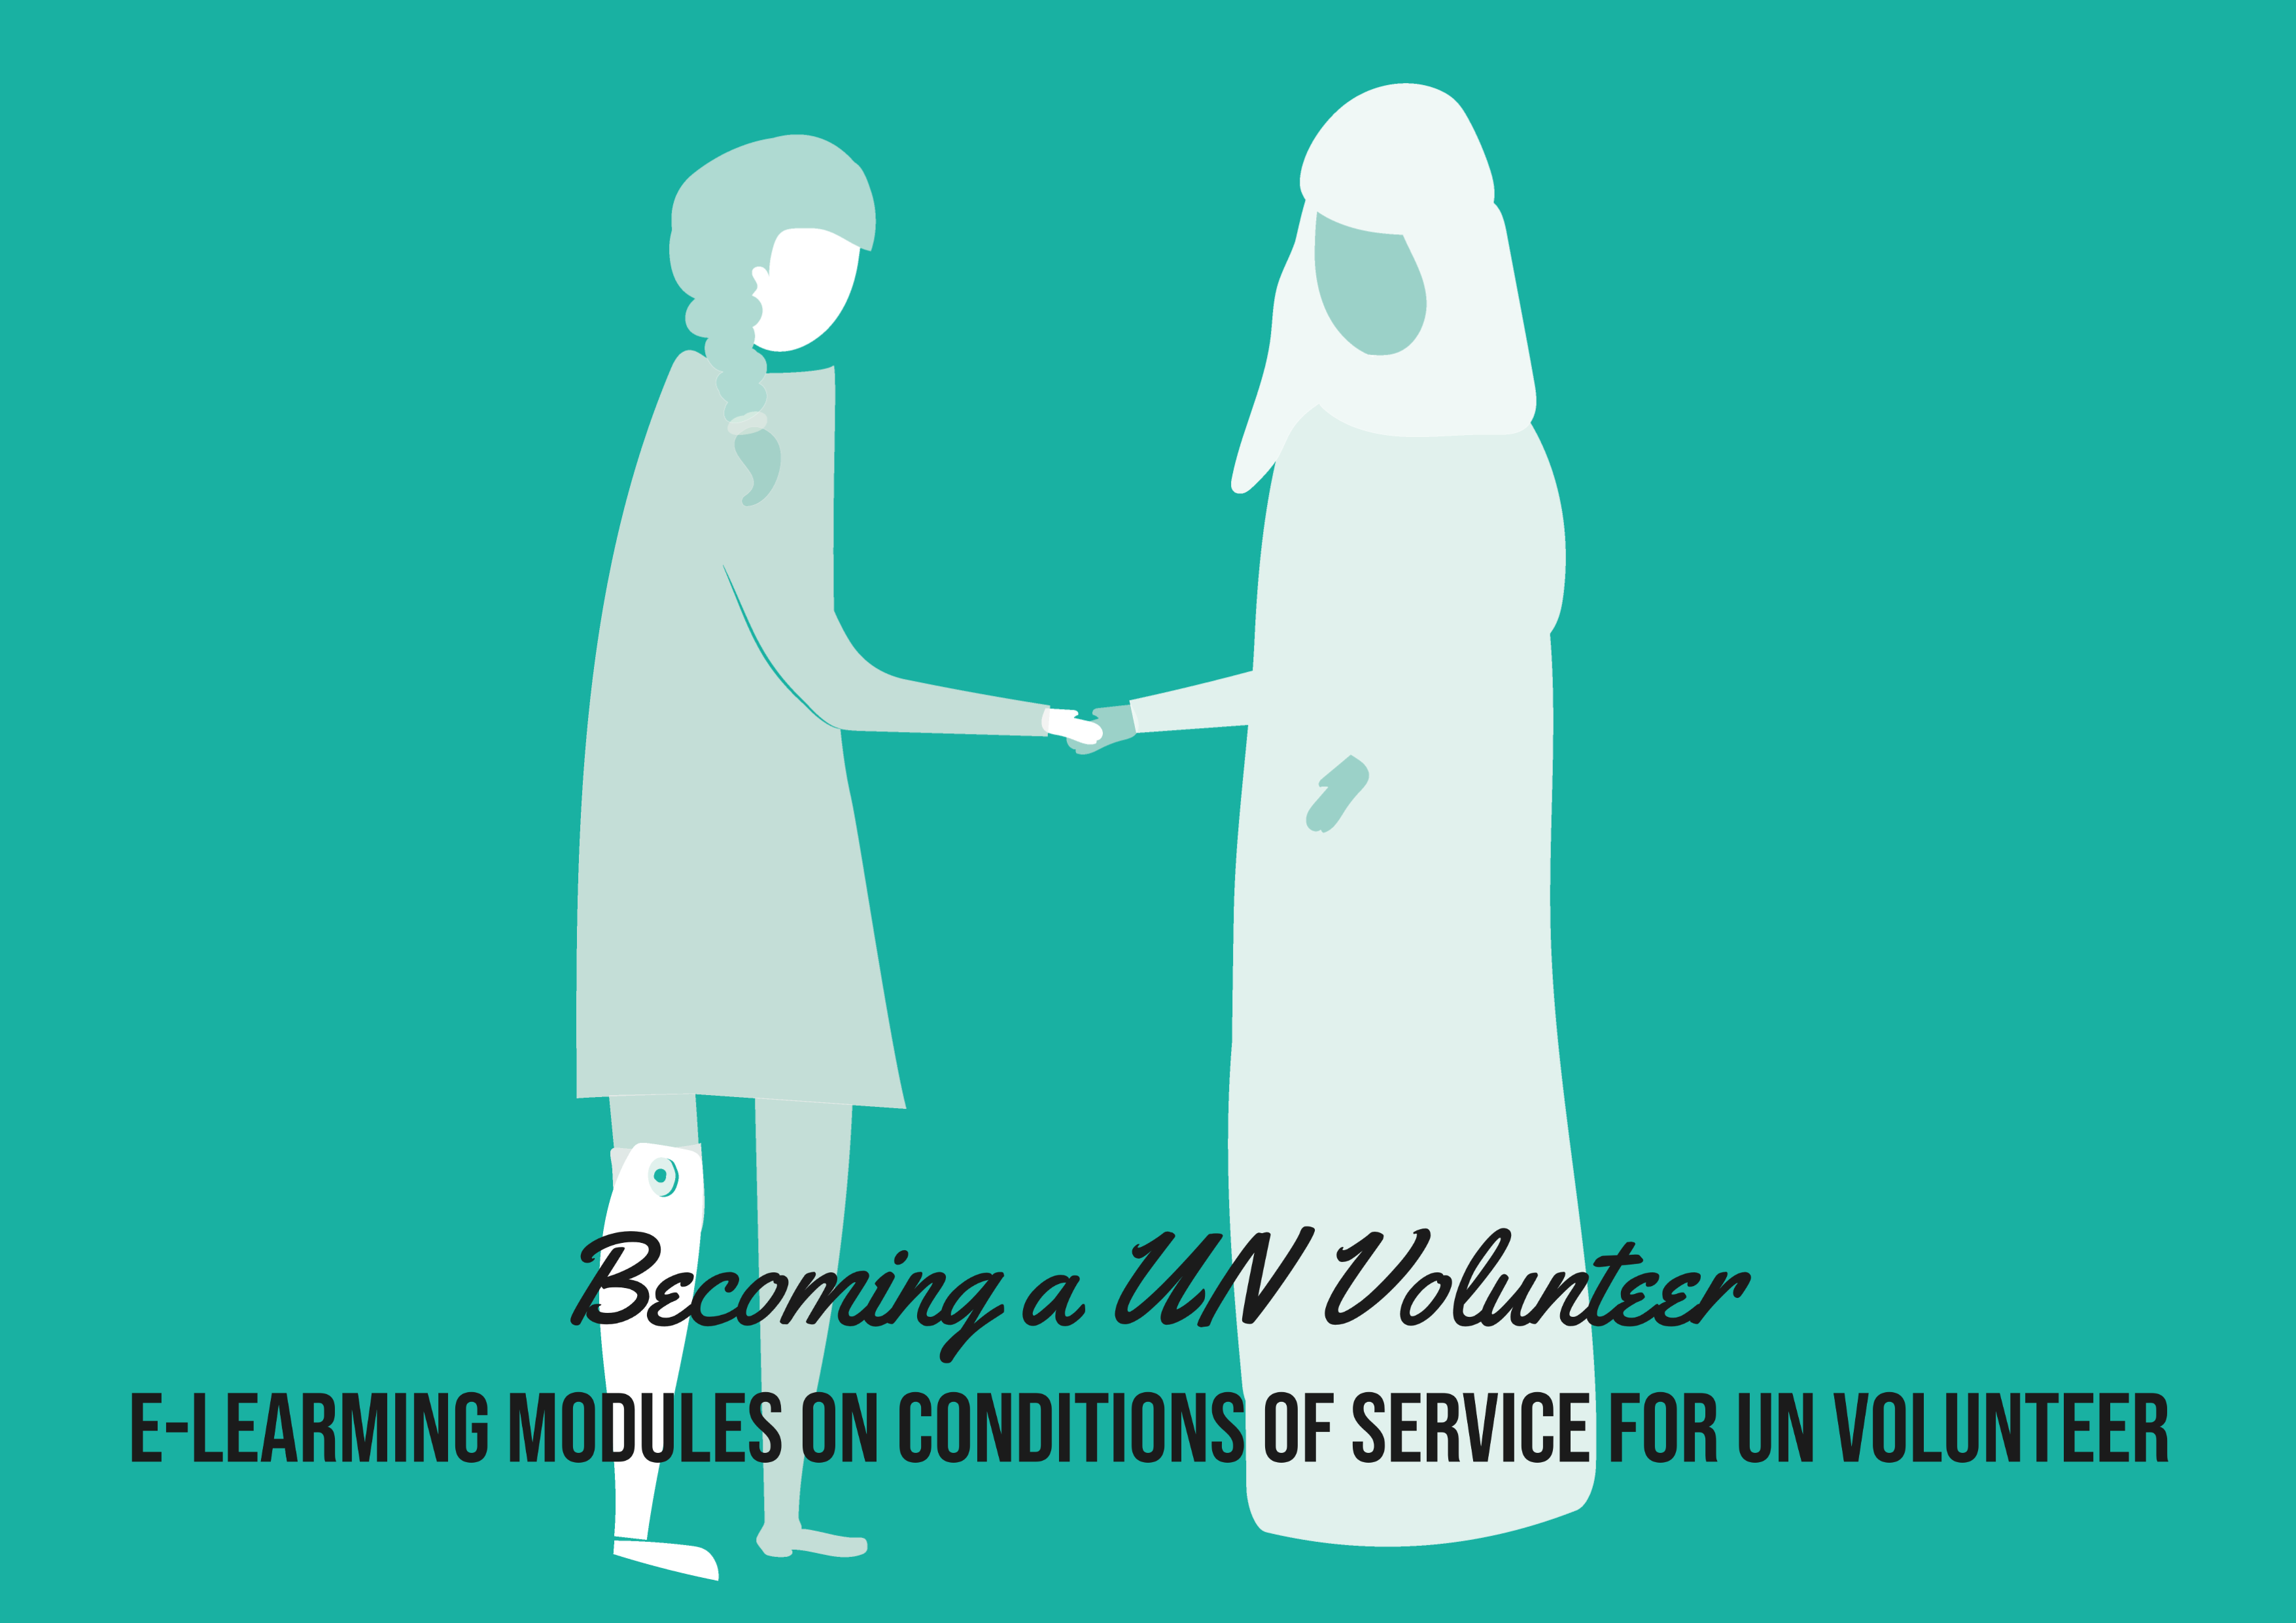 Complete "Cómo convertirse en Voluntaria o Voluntario de las Naciones Unidas"